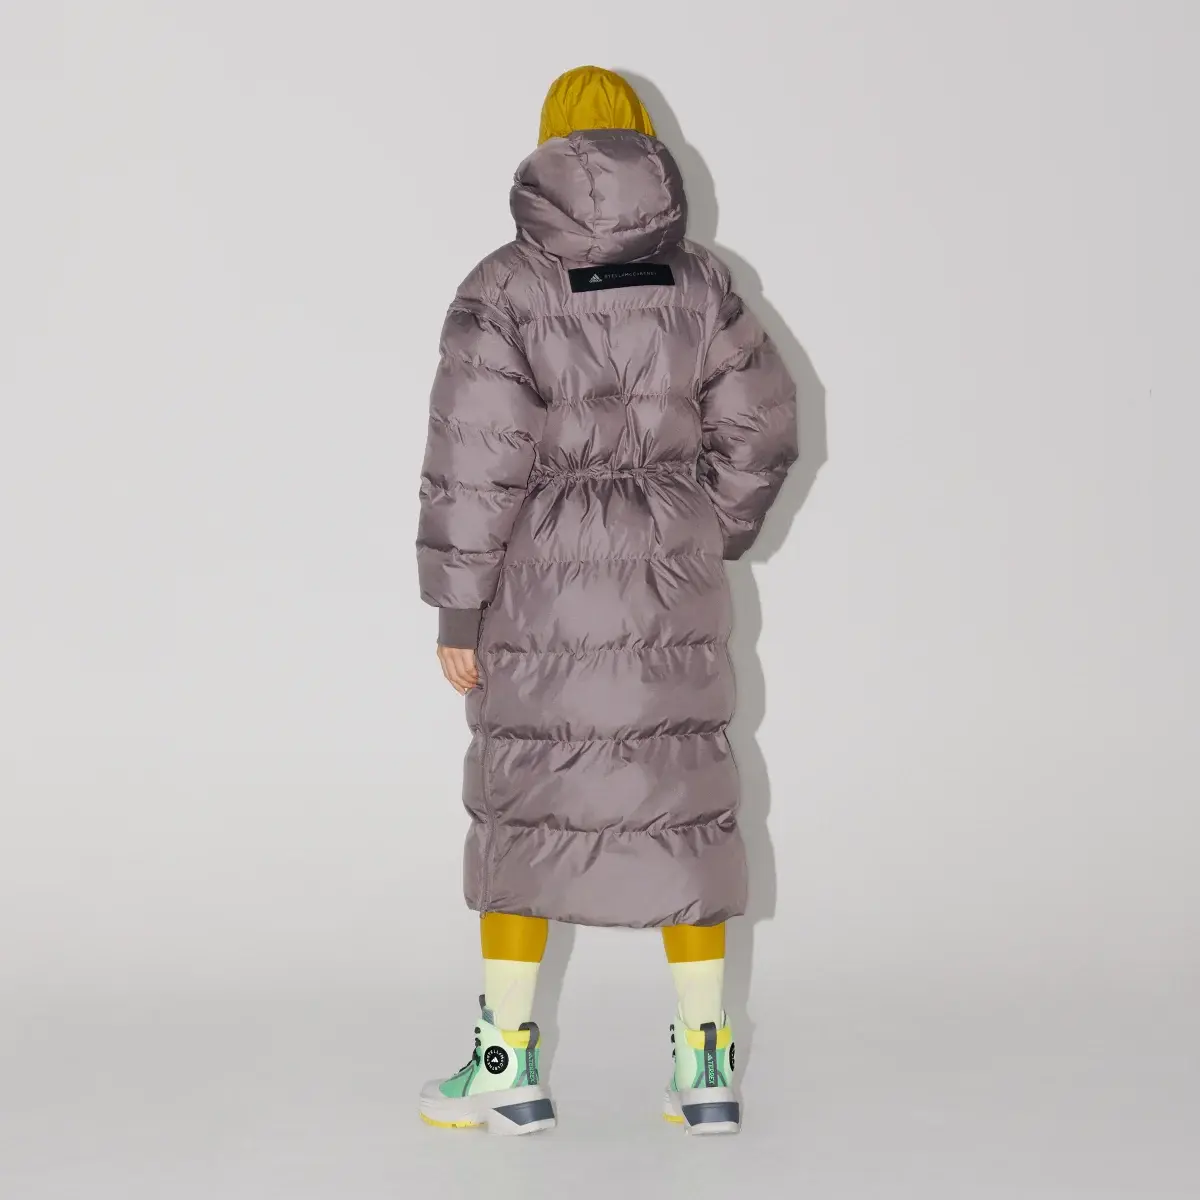 Adidas by Stella McCartney Long Padded Winter Jacket. 3